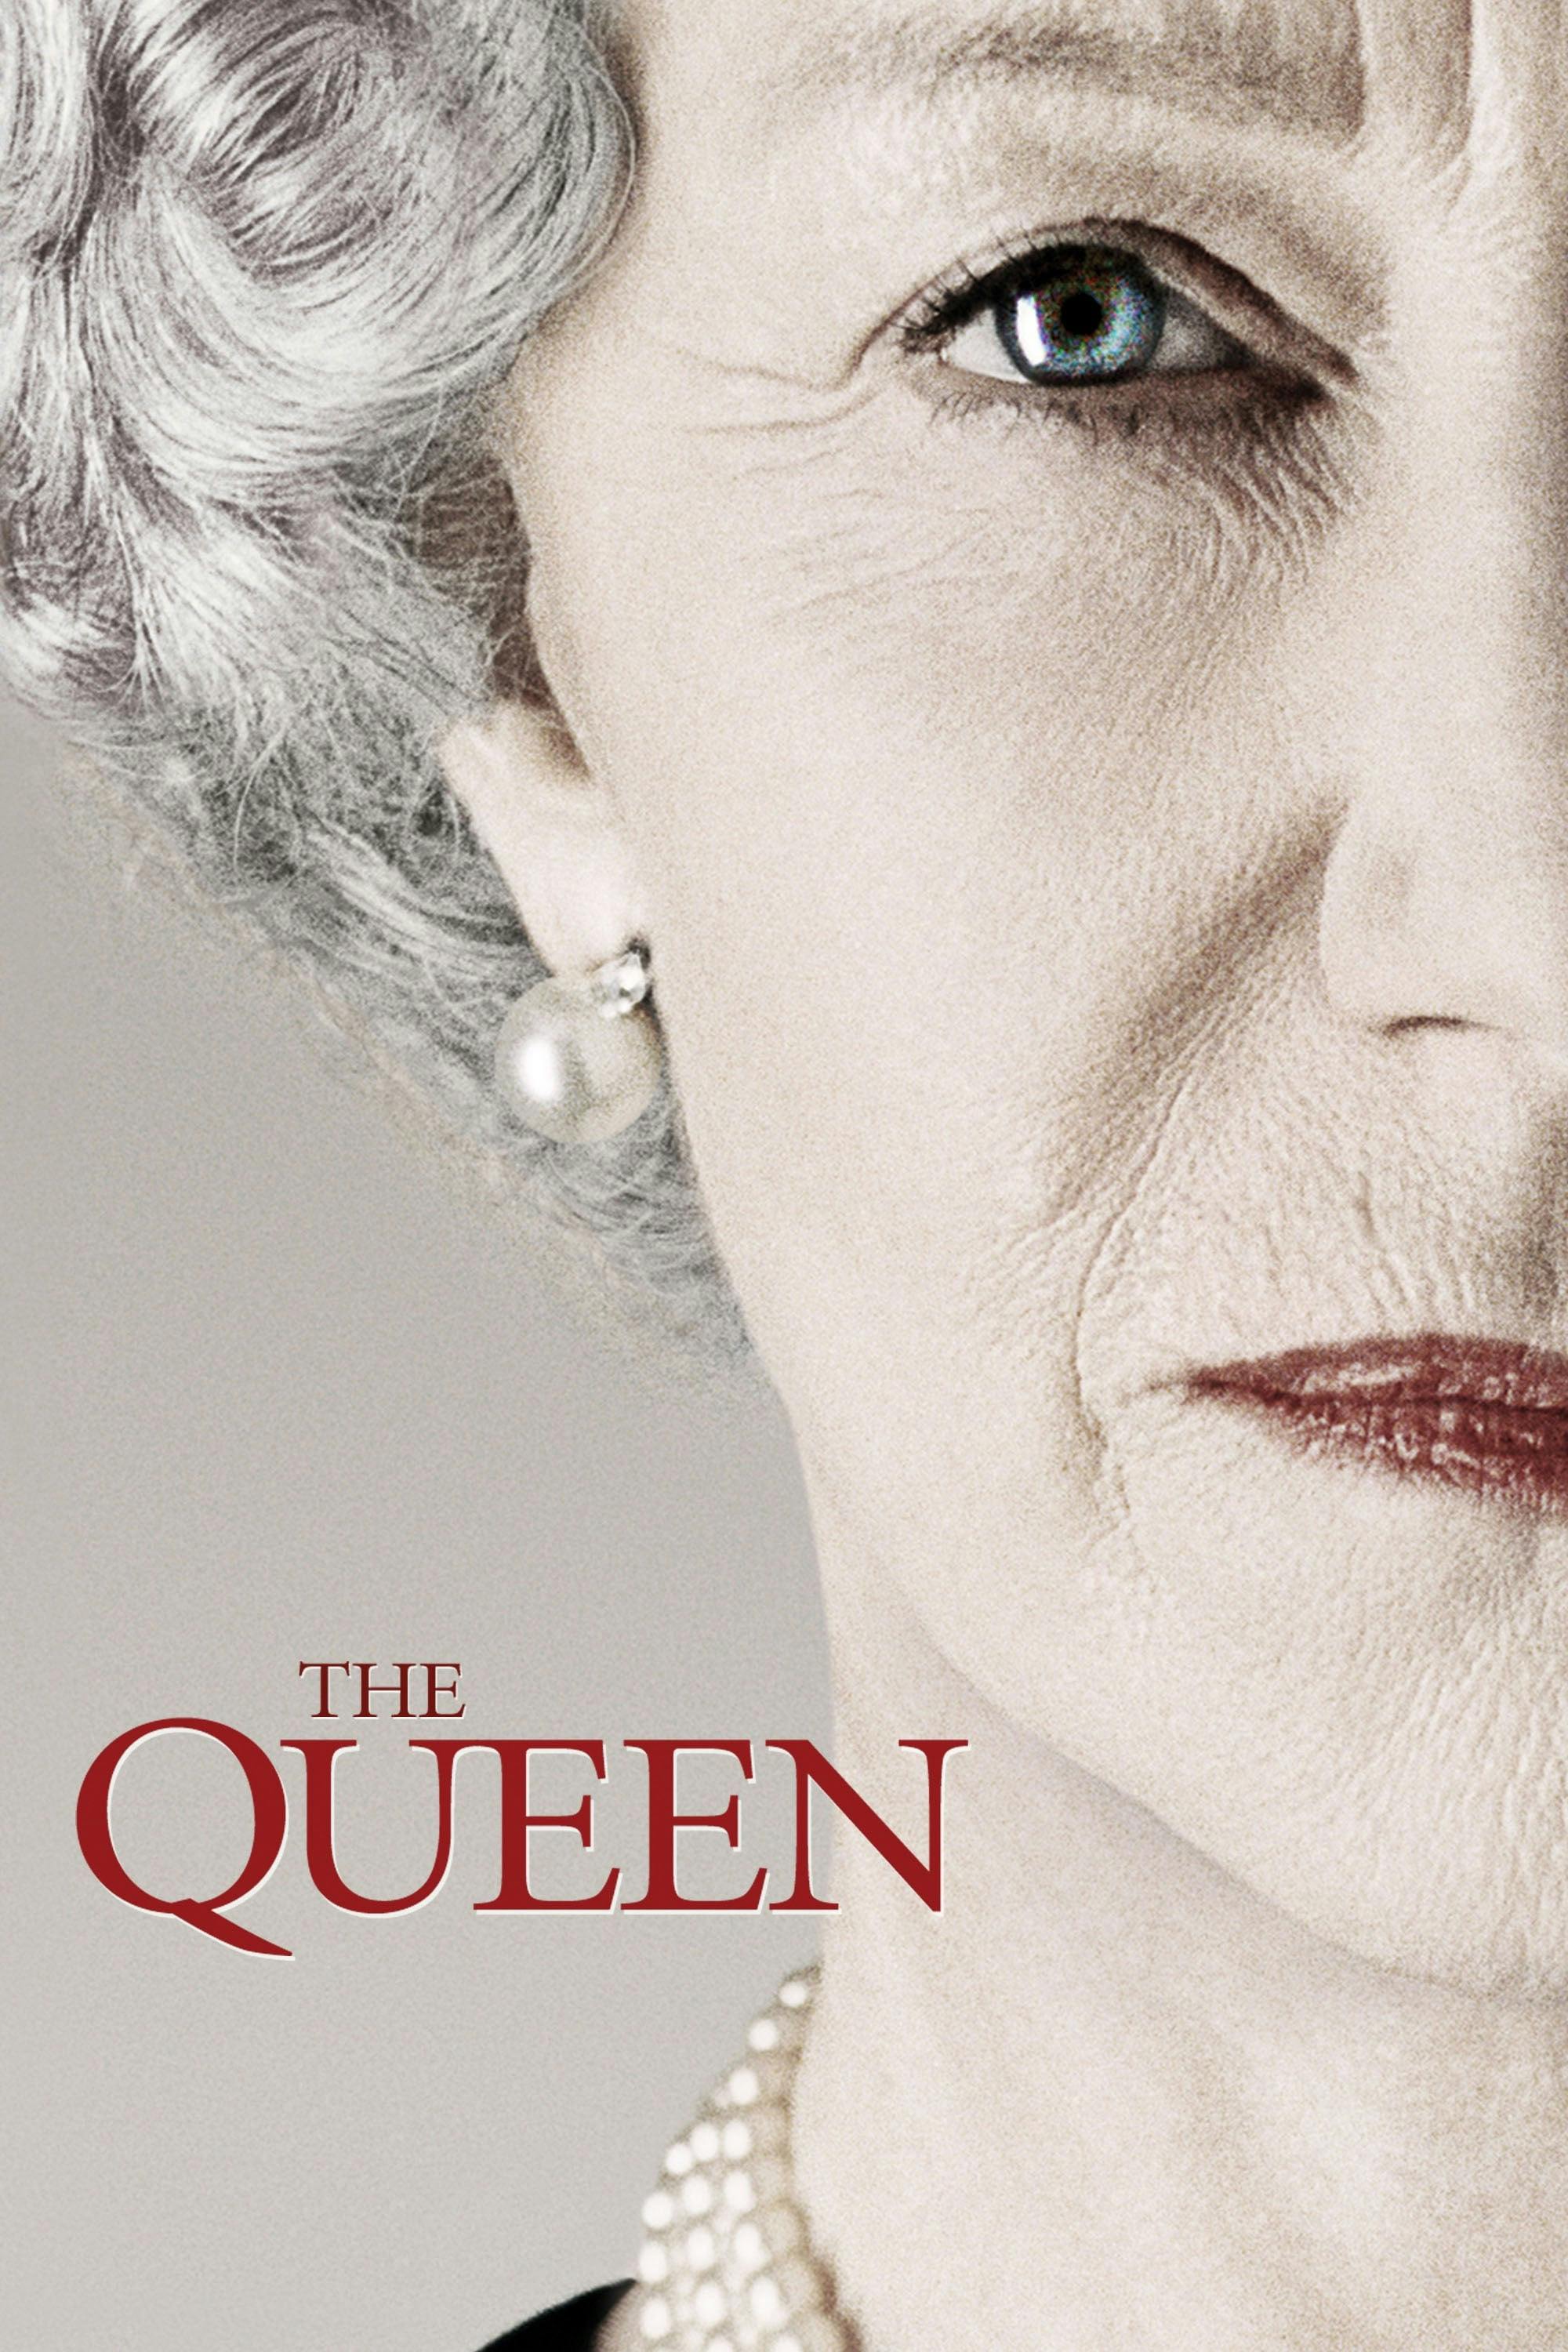 Best Helen Mirren movies to watch on Amazon or iTunes